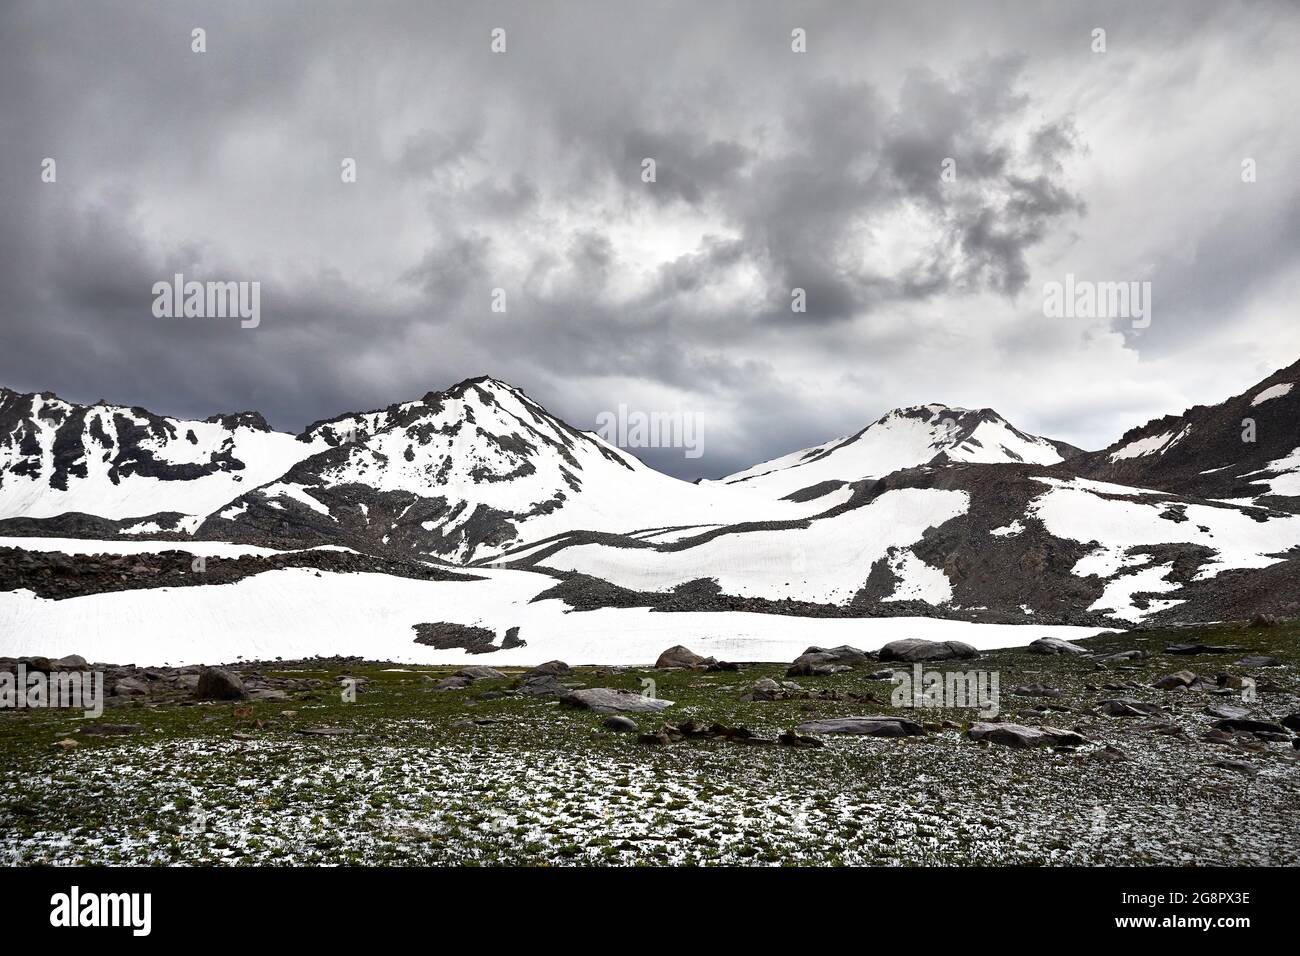 Schöne Landschaft des Bergtals mit Schneekappe Gipfel und gegen dunklen bewölkten Himmel. Outdoor- und Wanderkonzept Stockfoto